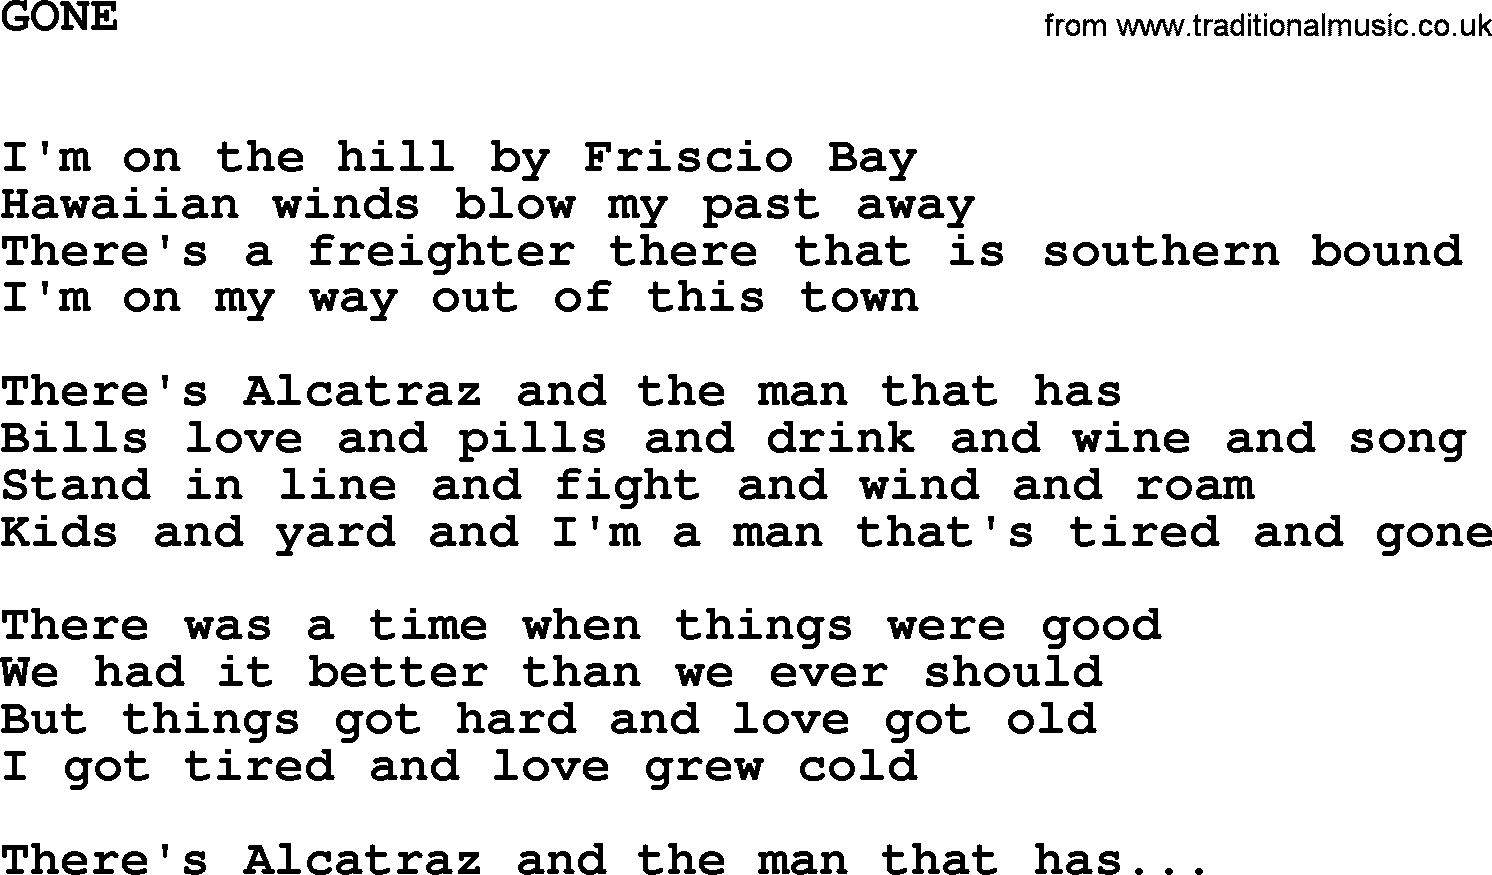 Johnny Cash song Gone.txt lyrics